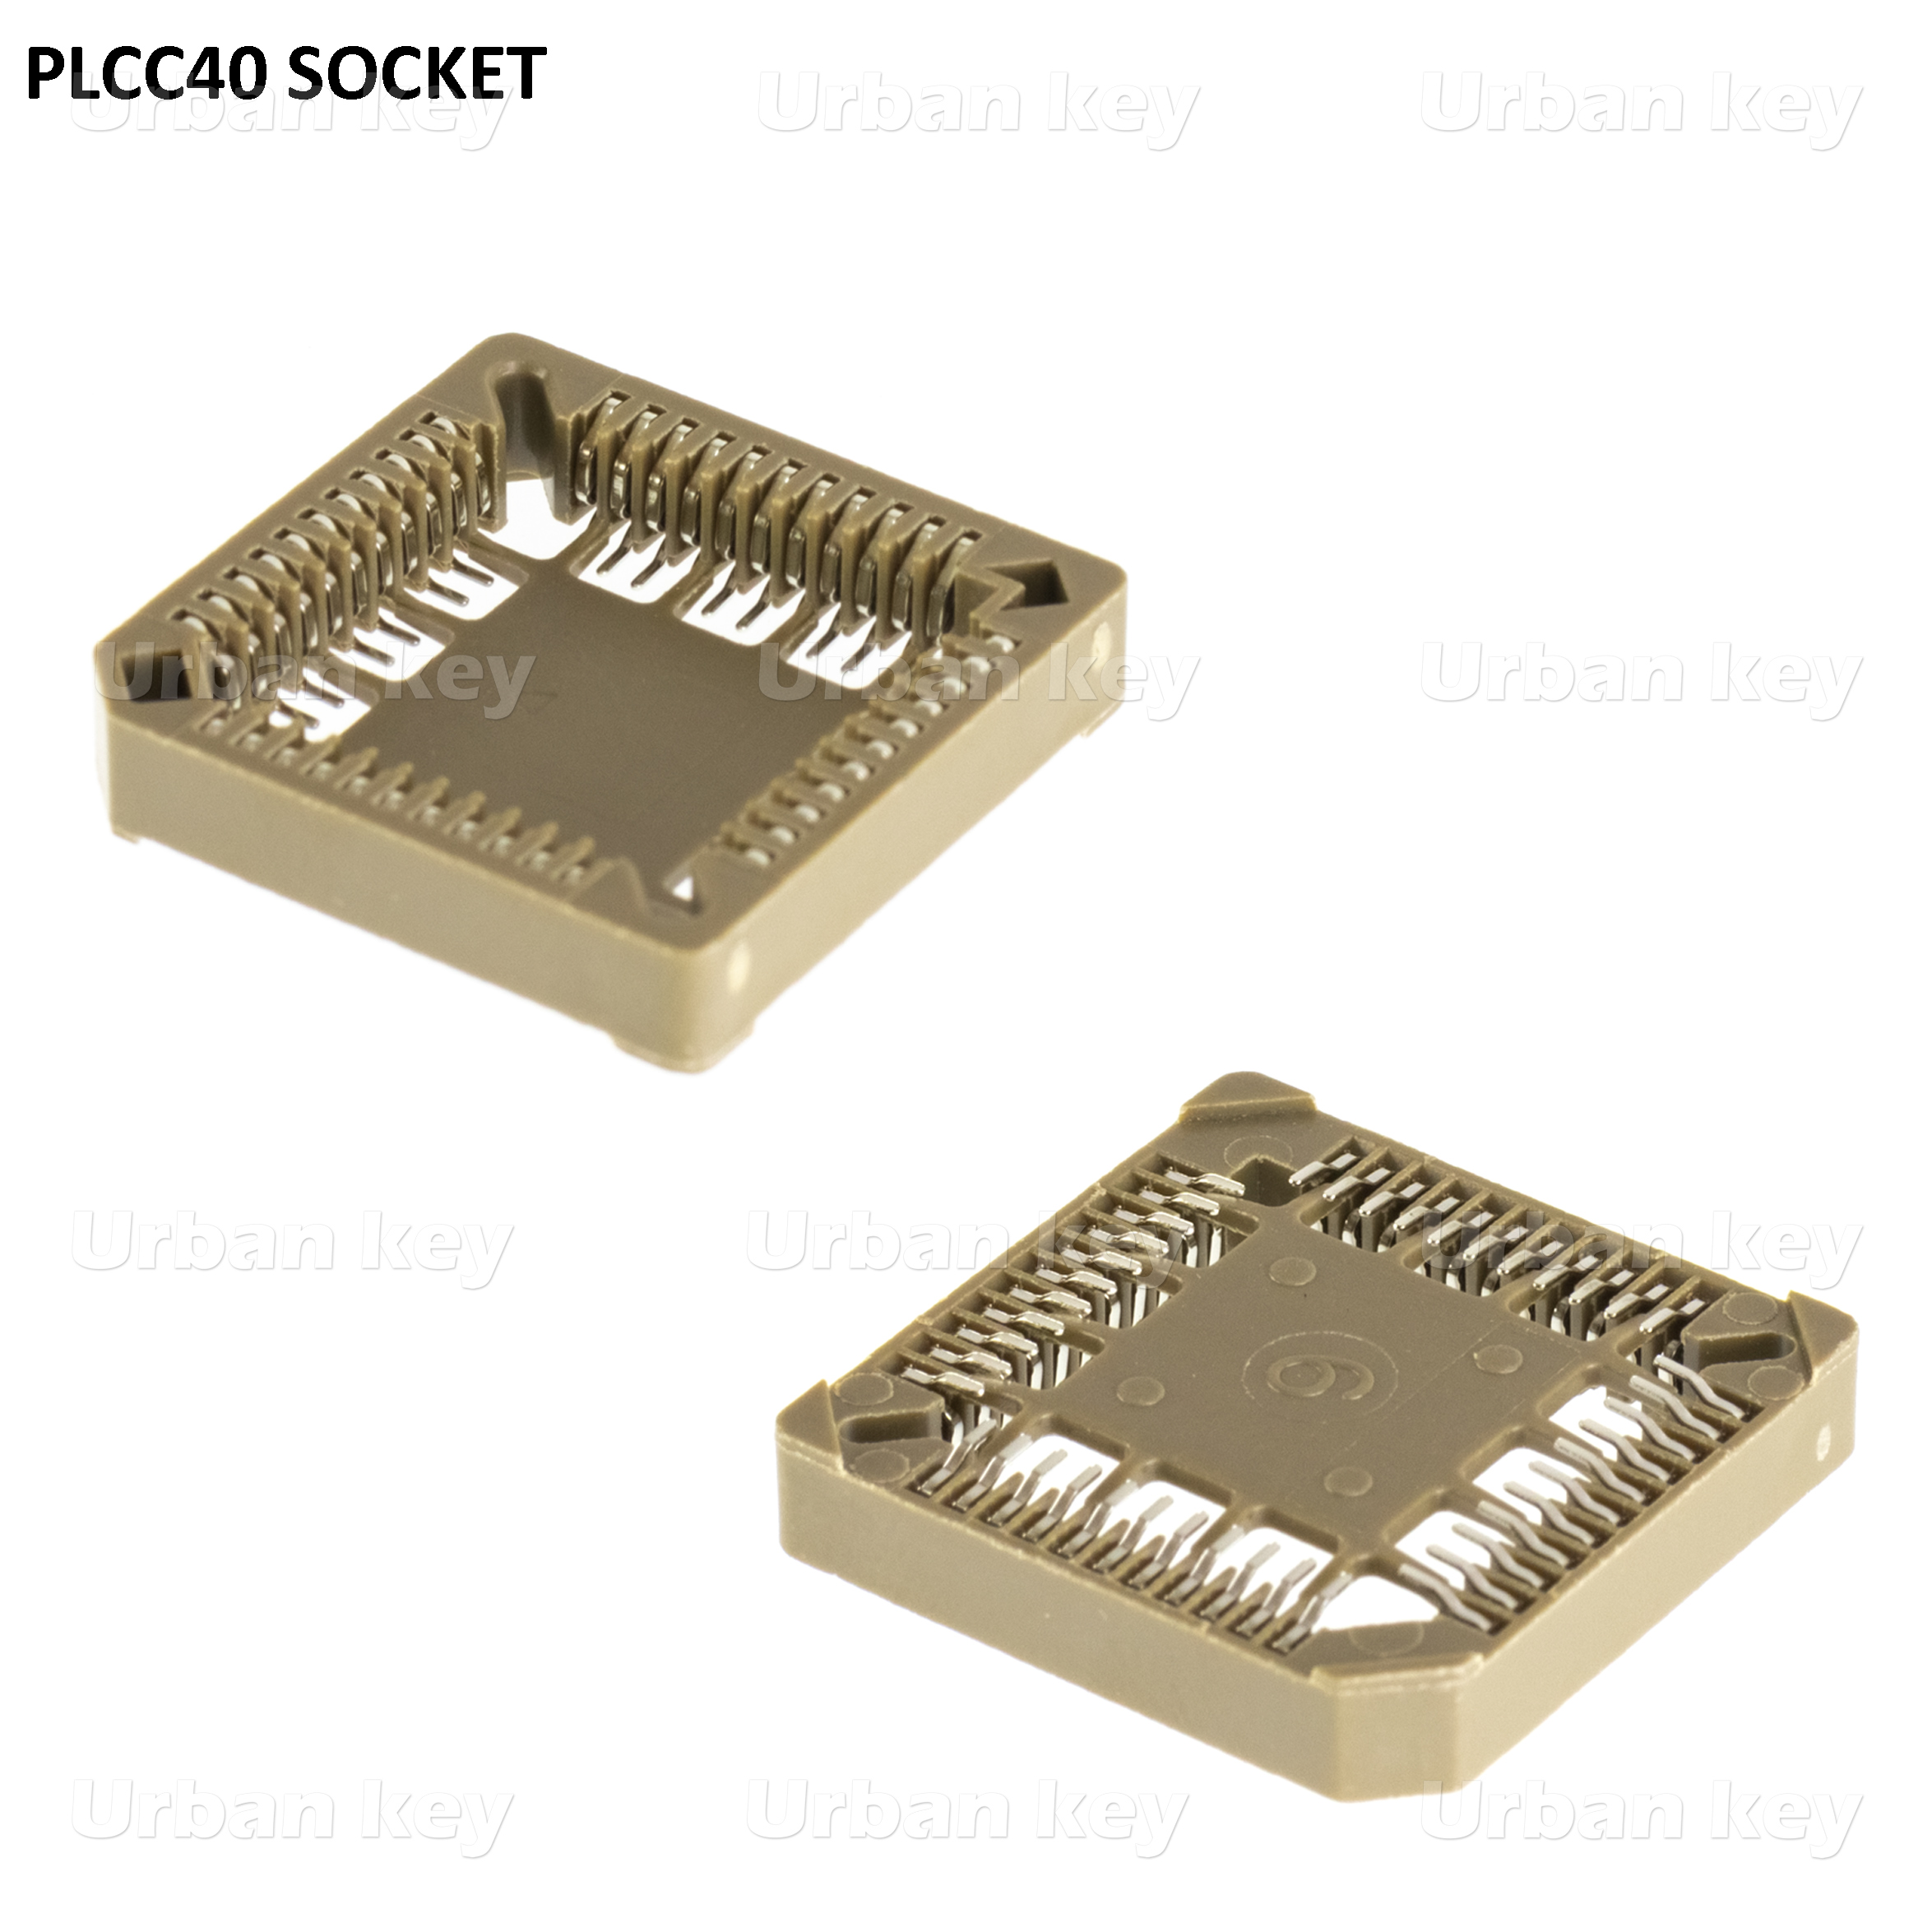 SOCKET PLCC40 PARA MICROCONTROLADOR